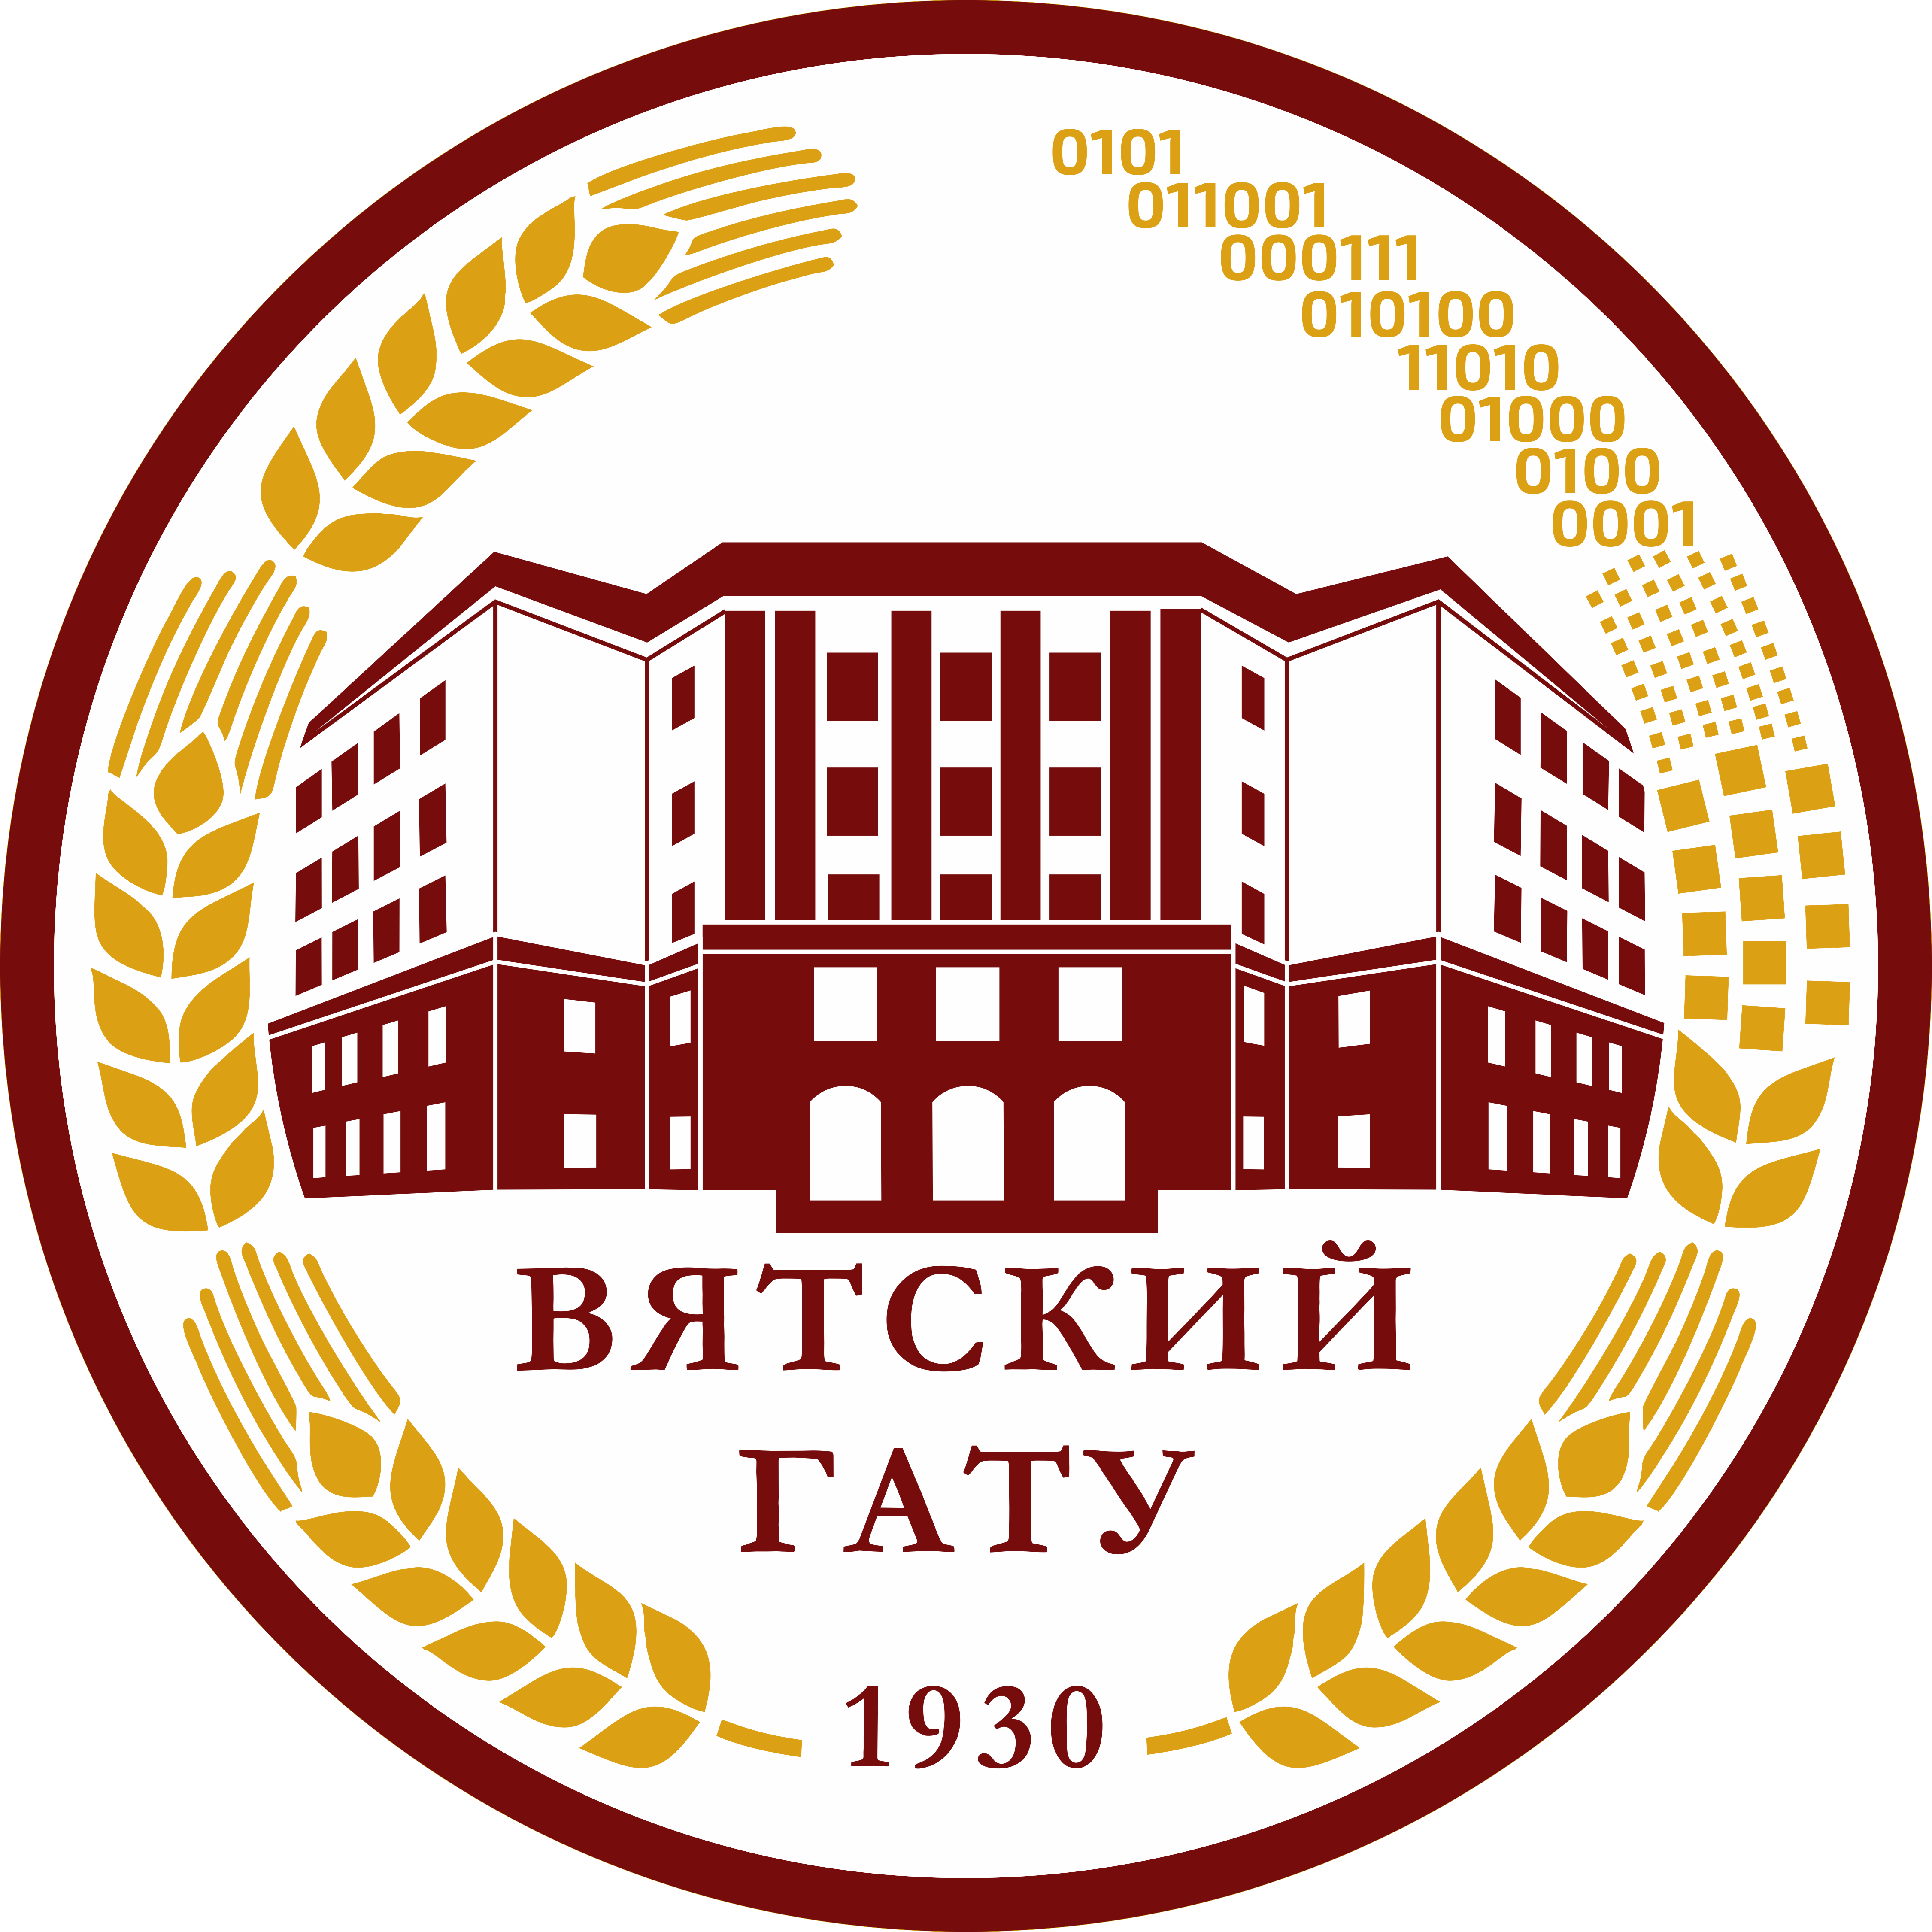 логотип Вятского ГАТУ